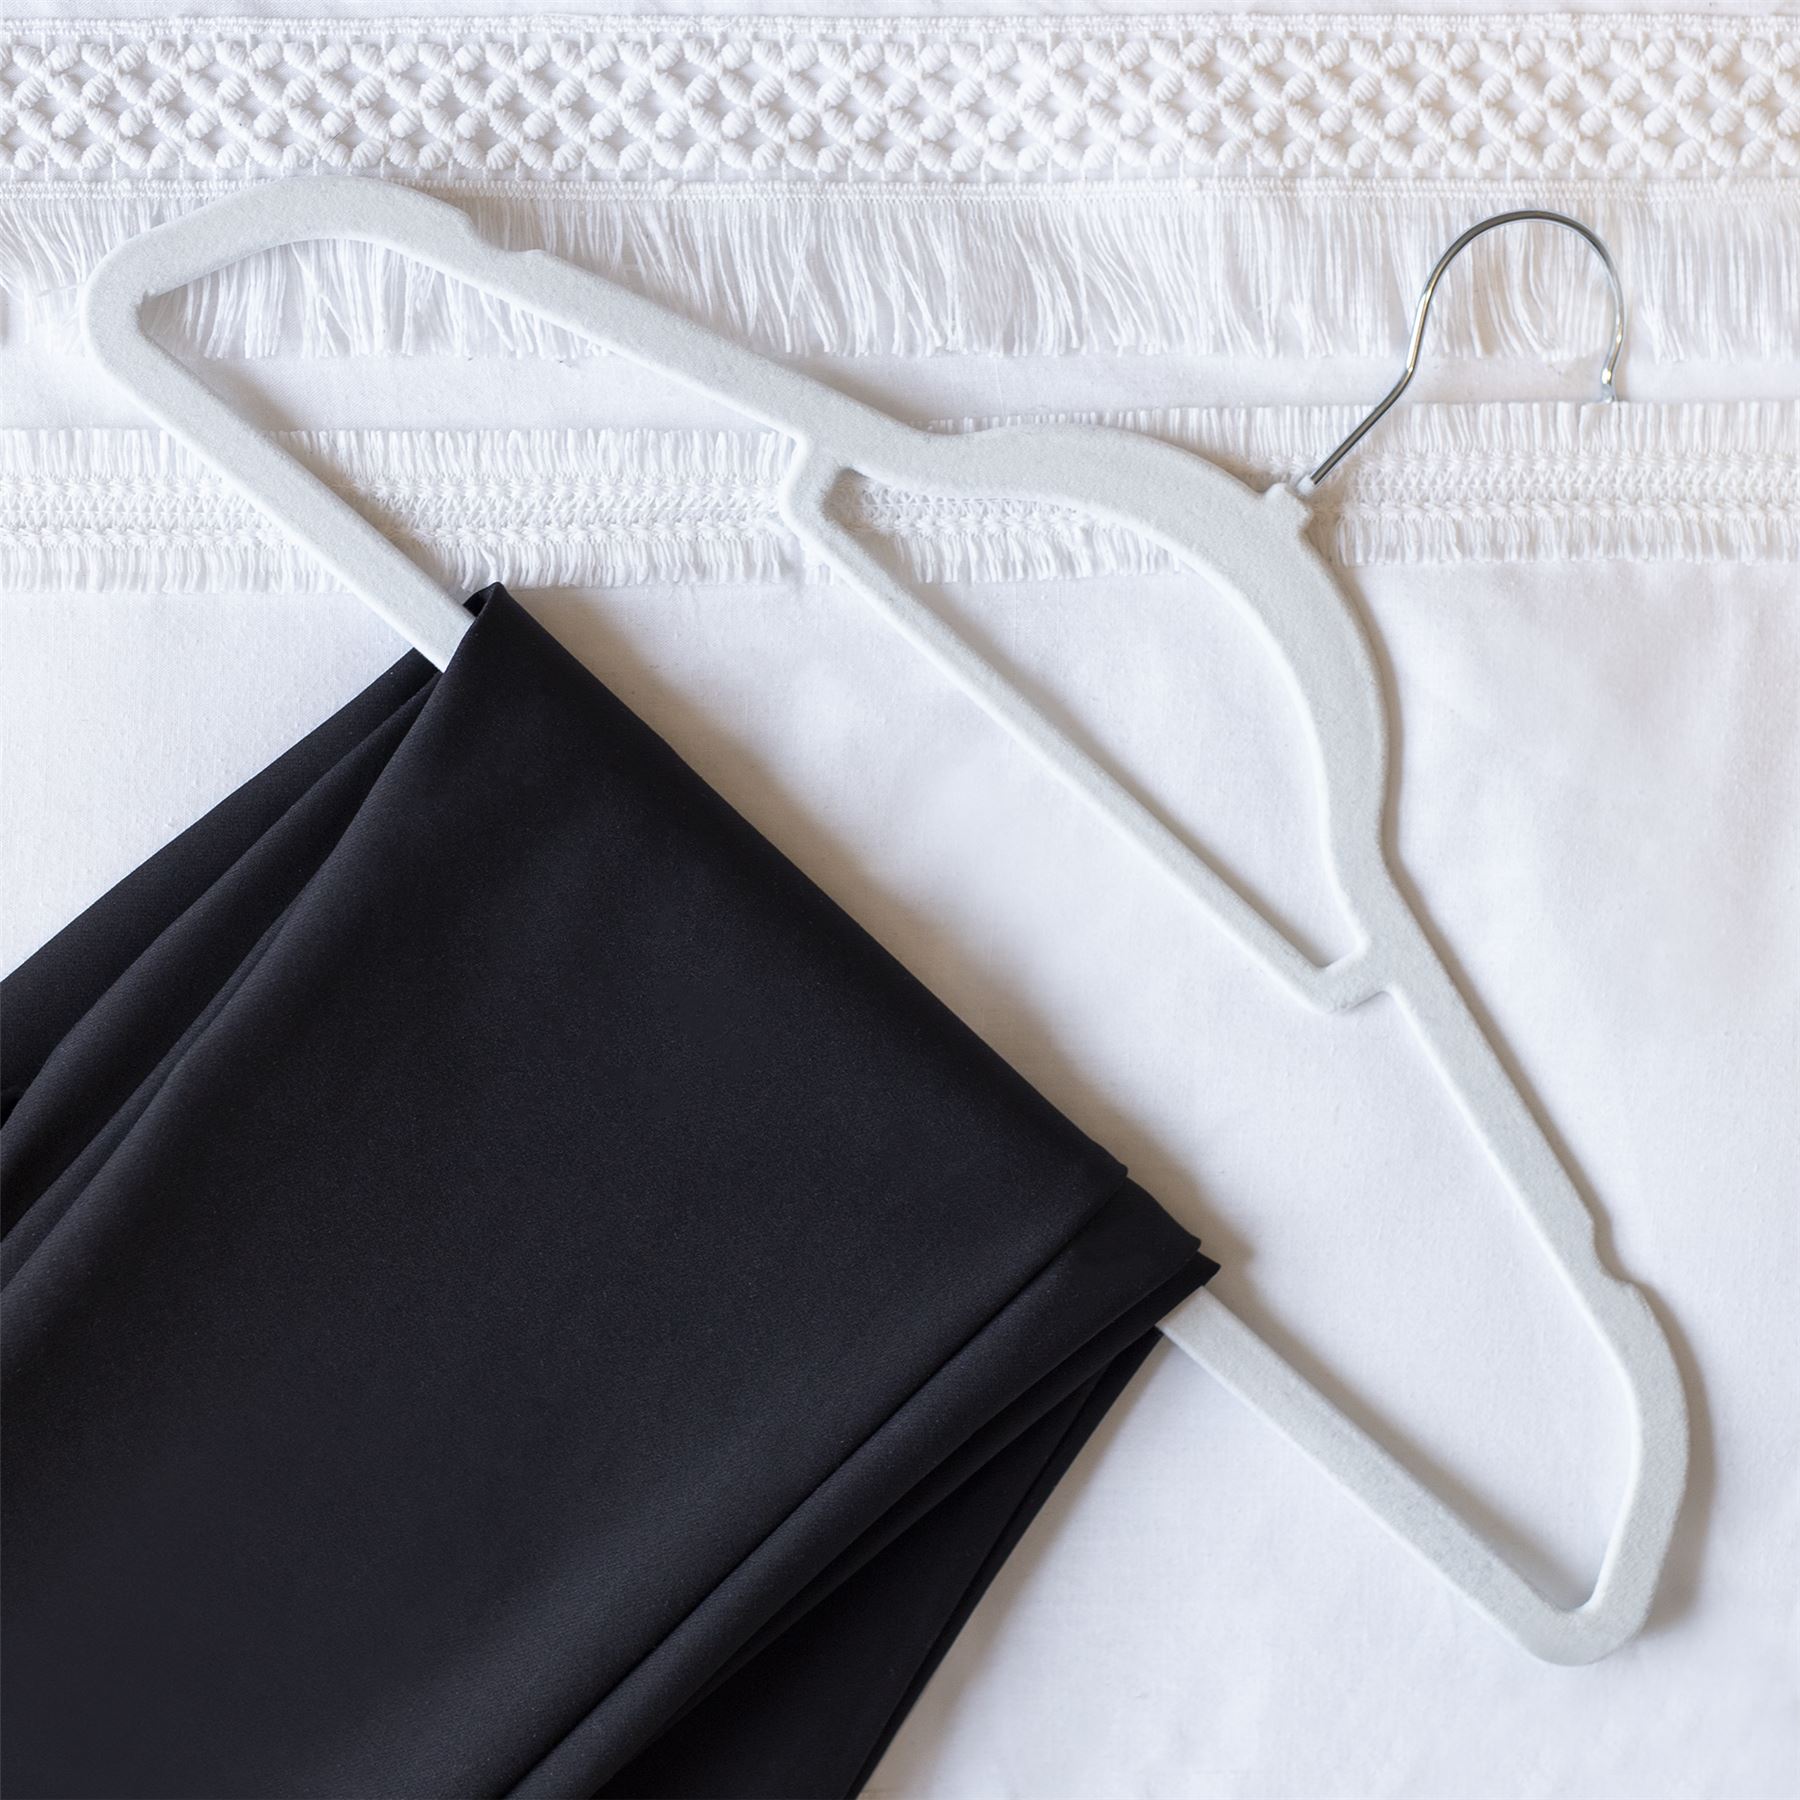 Velvet Coat Hangers White - Pack of 50 | M&W